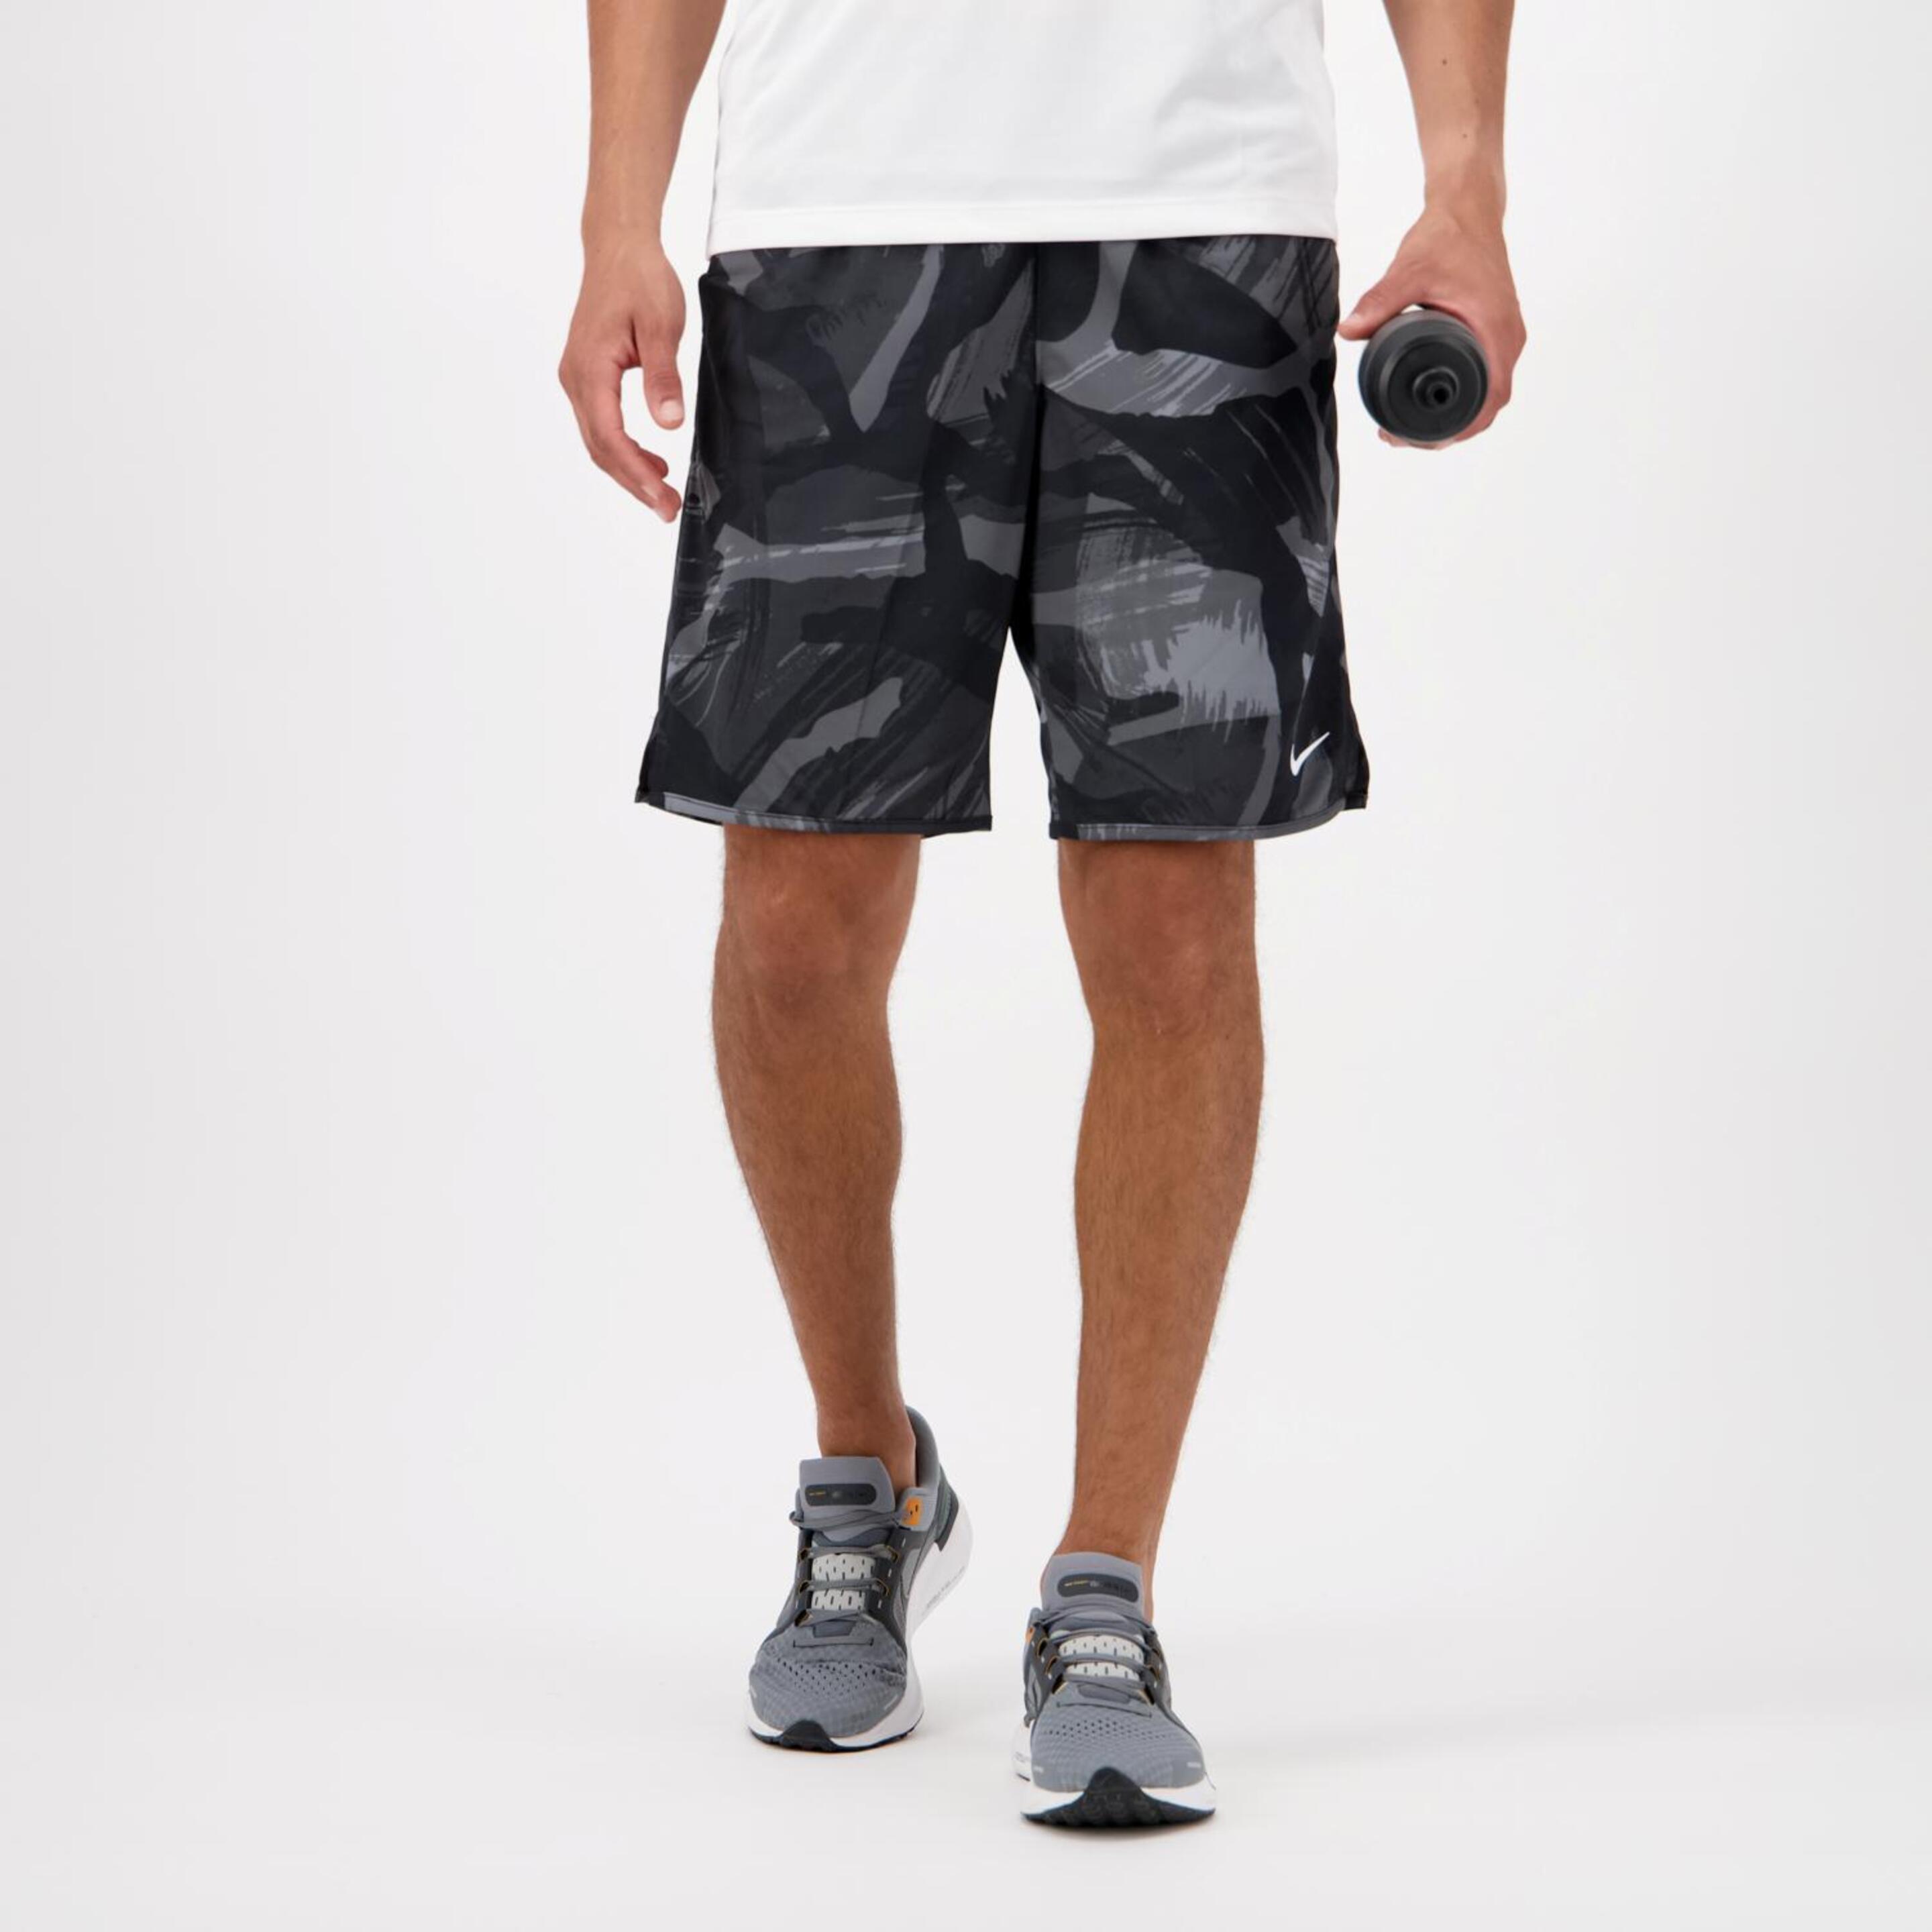 Calções Nike - negro - Calções Running Homem